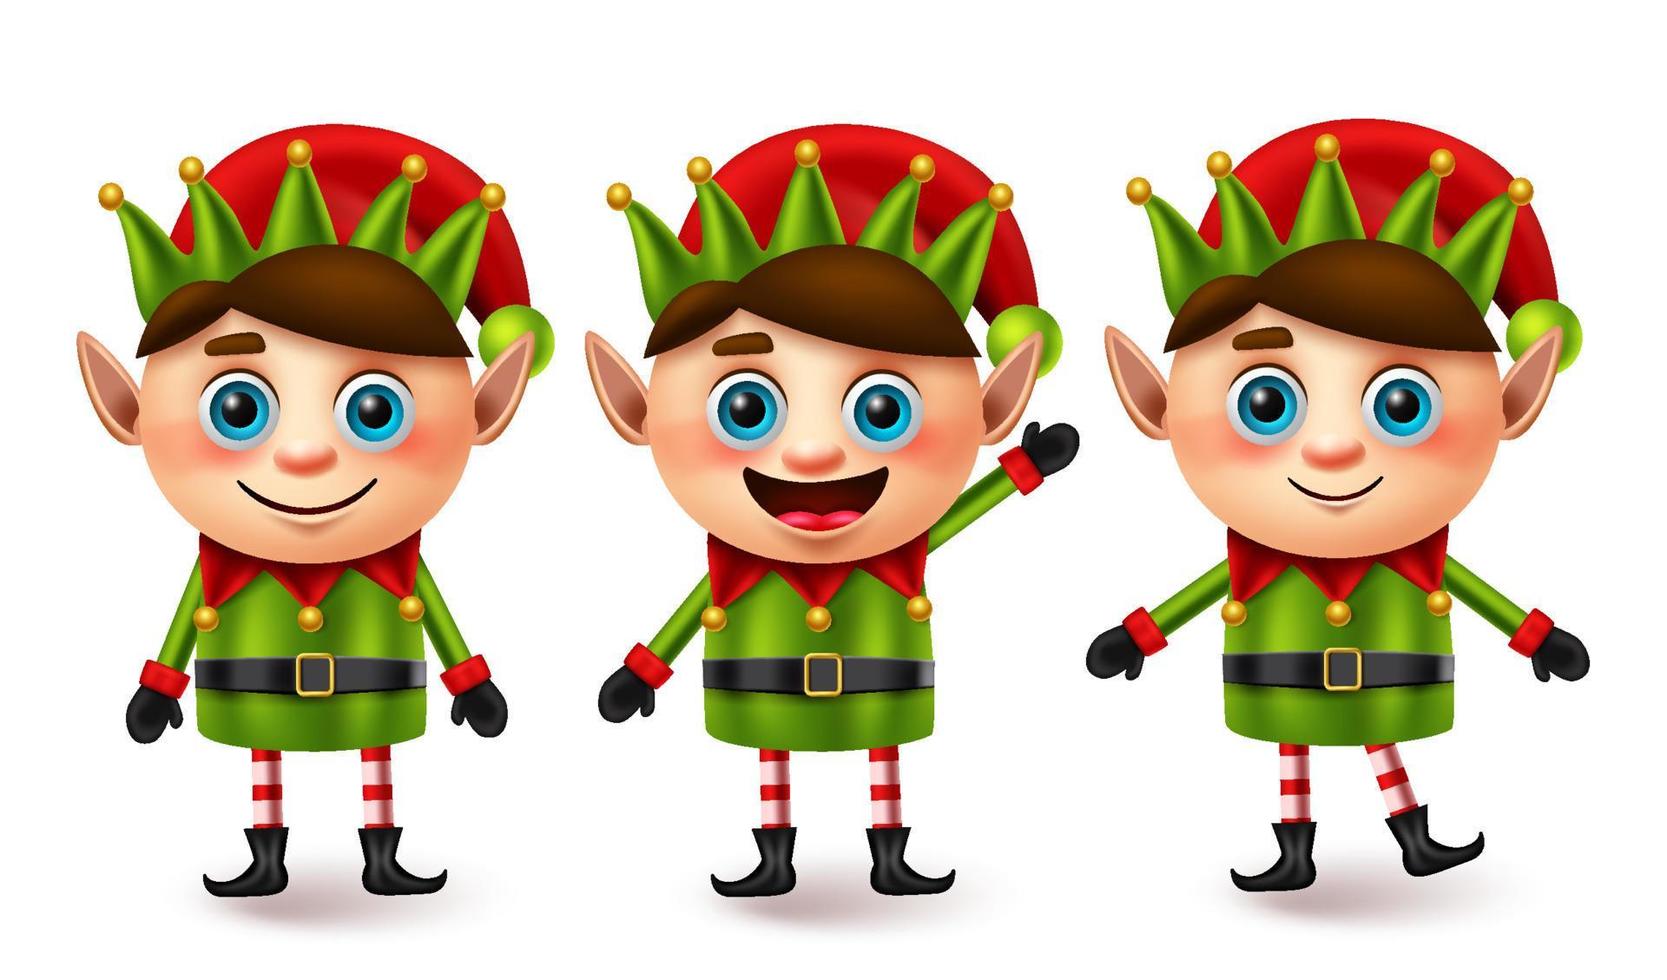 jeu de vecteurs de caractères de Noël elfe. personnages de noël elfes dans une pose et un geste debout avec une expression faciale amicale pour la conception d'éléments de collection 3d mignons pour petits enfants. illustration vectorielle. vecteur